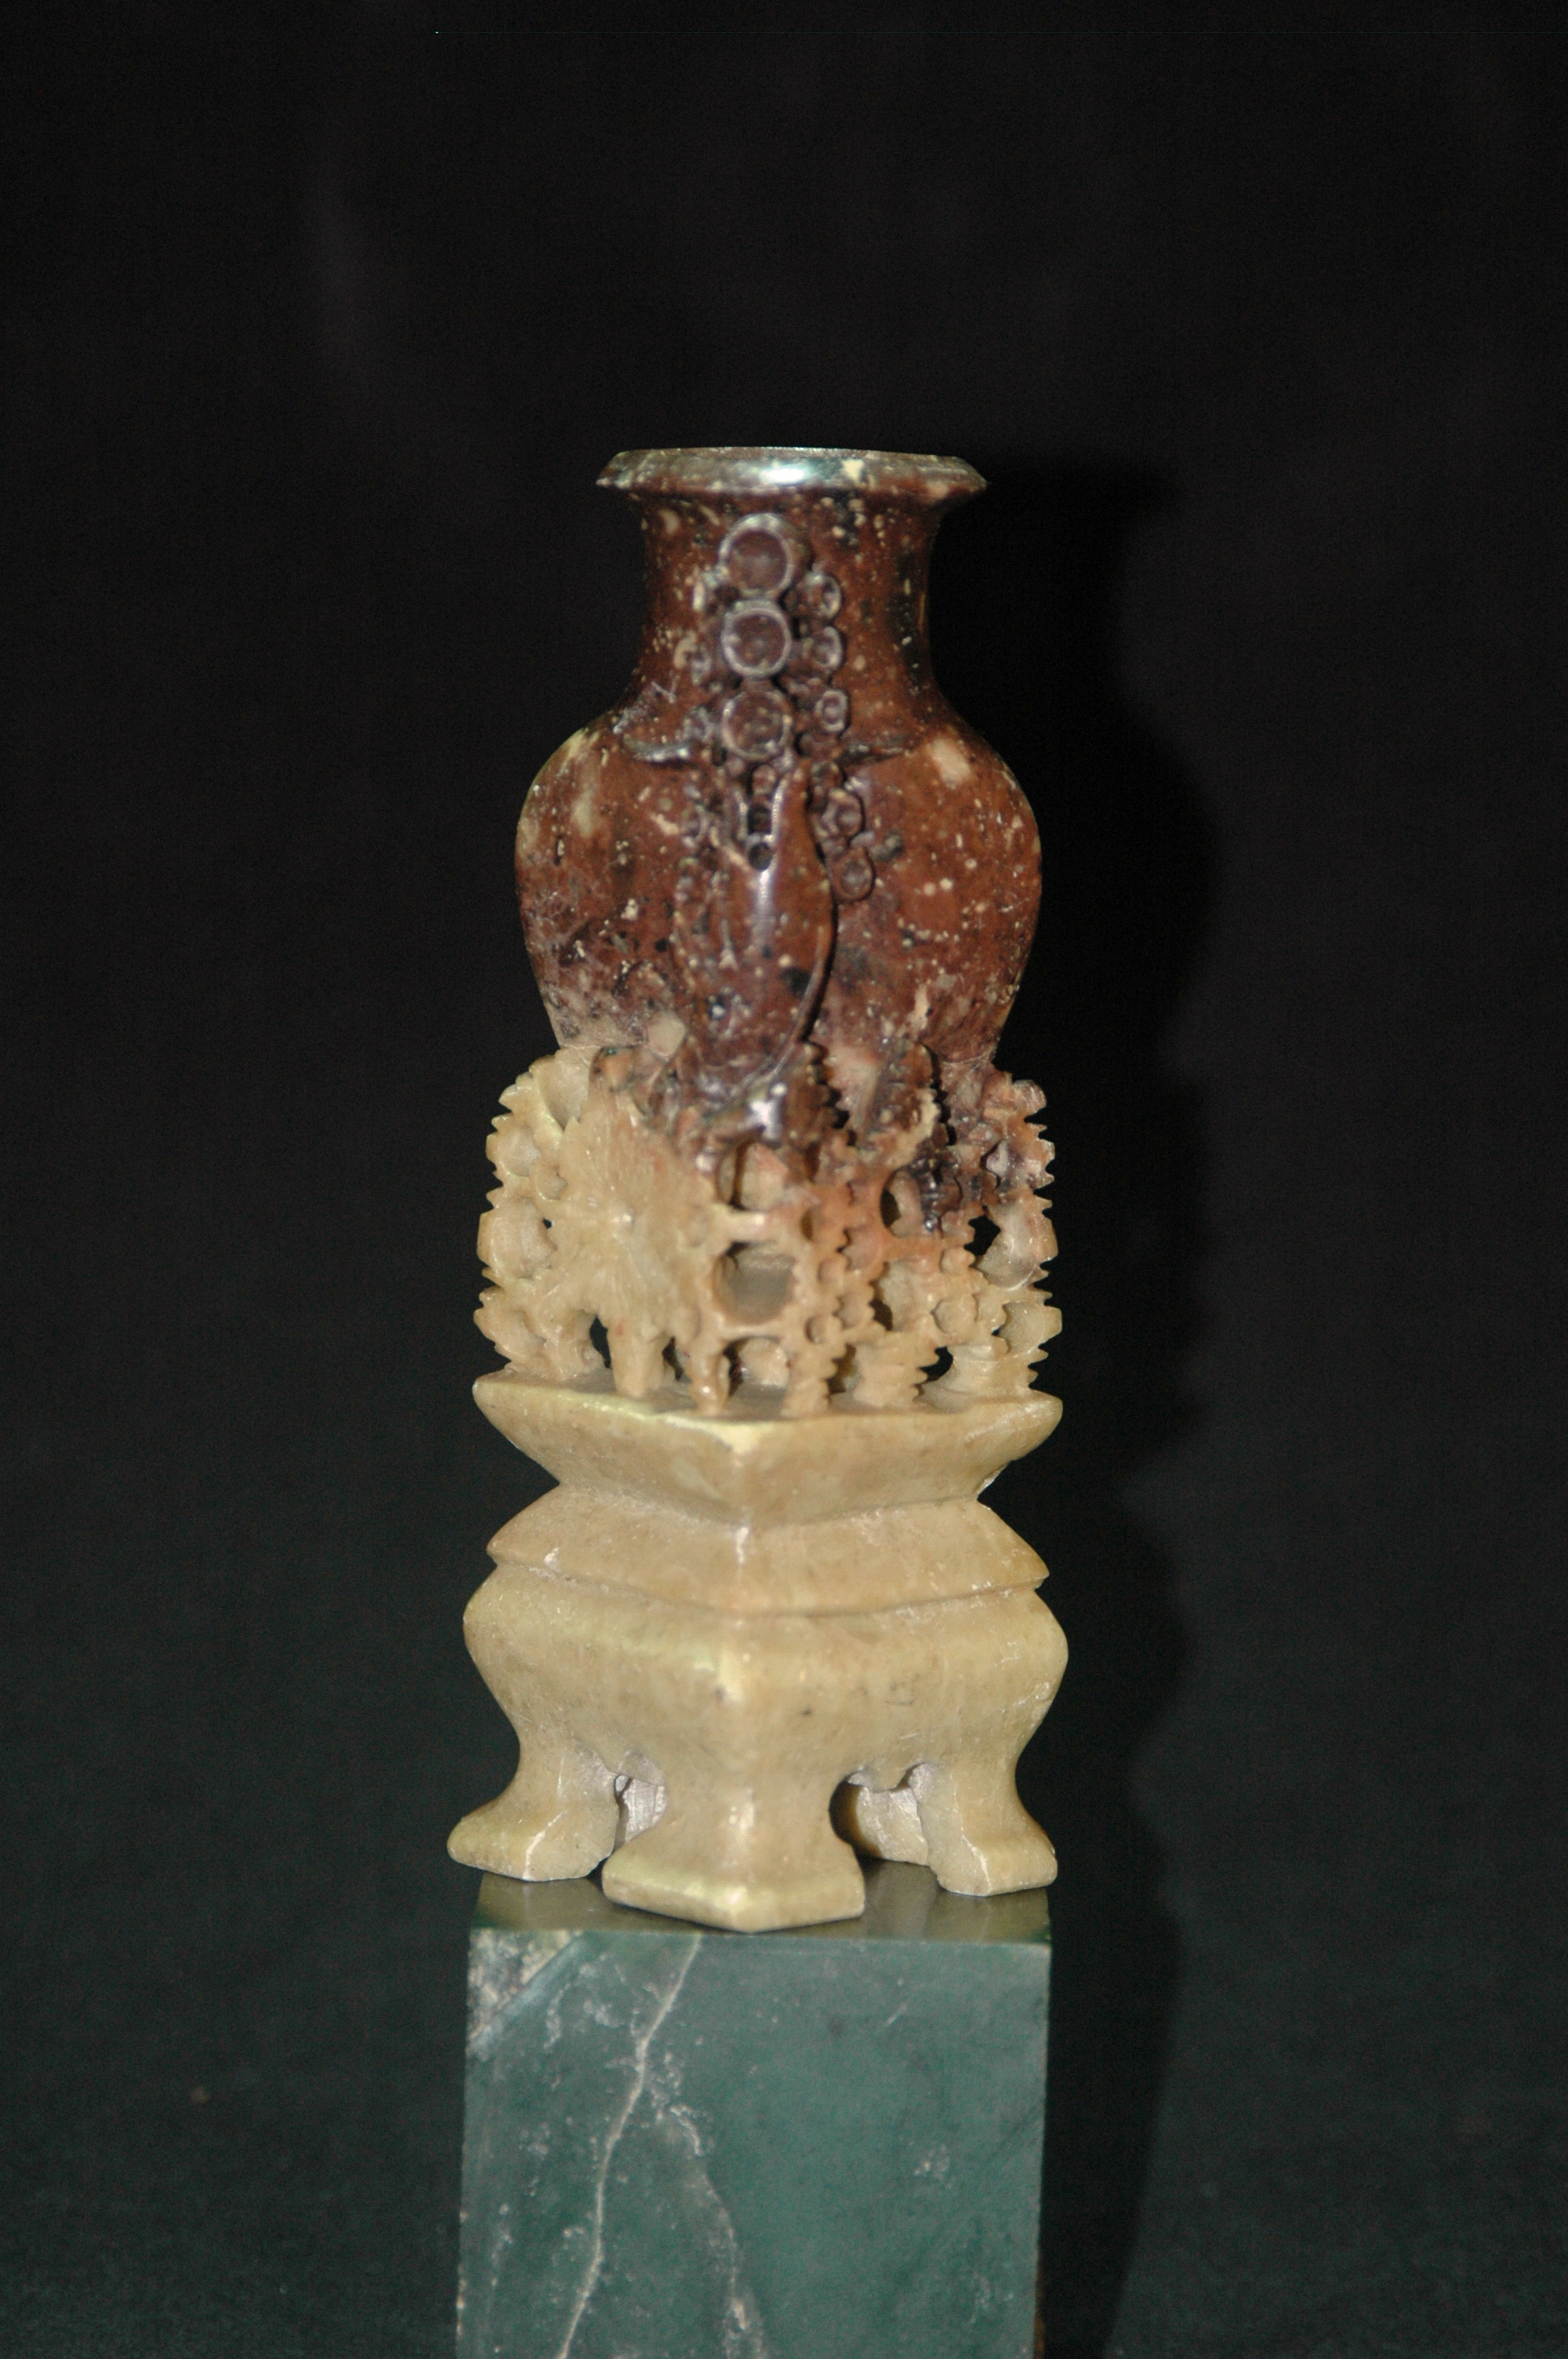 パワーストーン 風水 幸運を呼ぶ中国仏教美術 唐物 花鳥紋 花瓶 寿山石